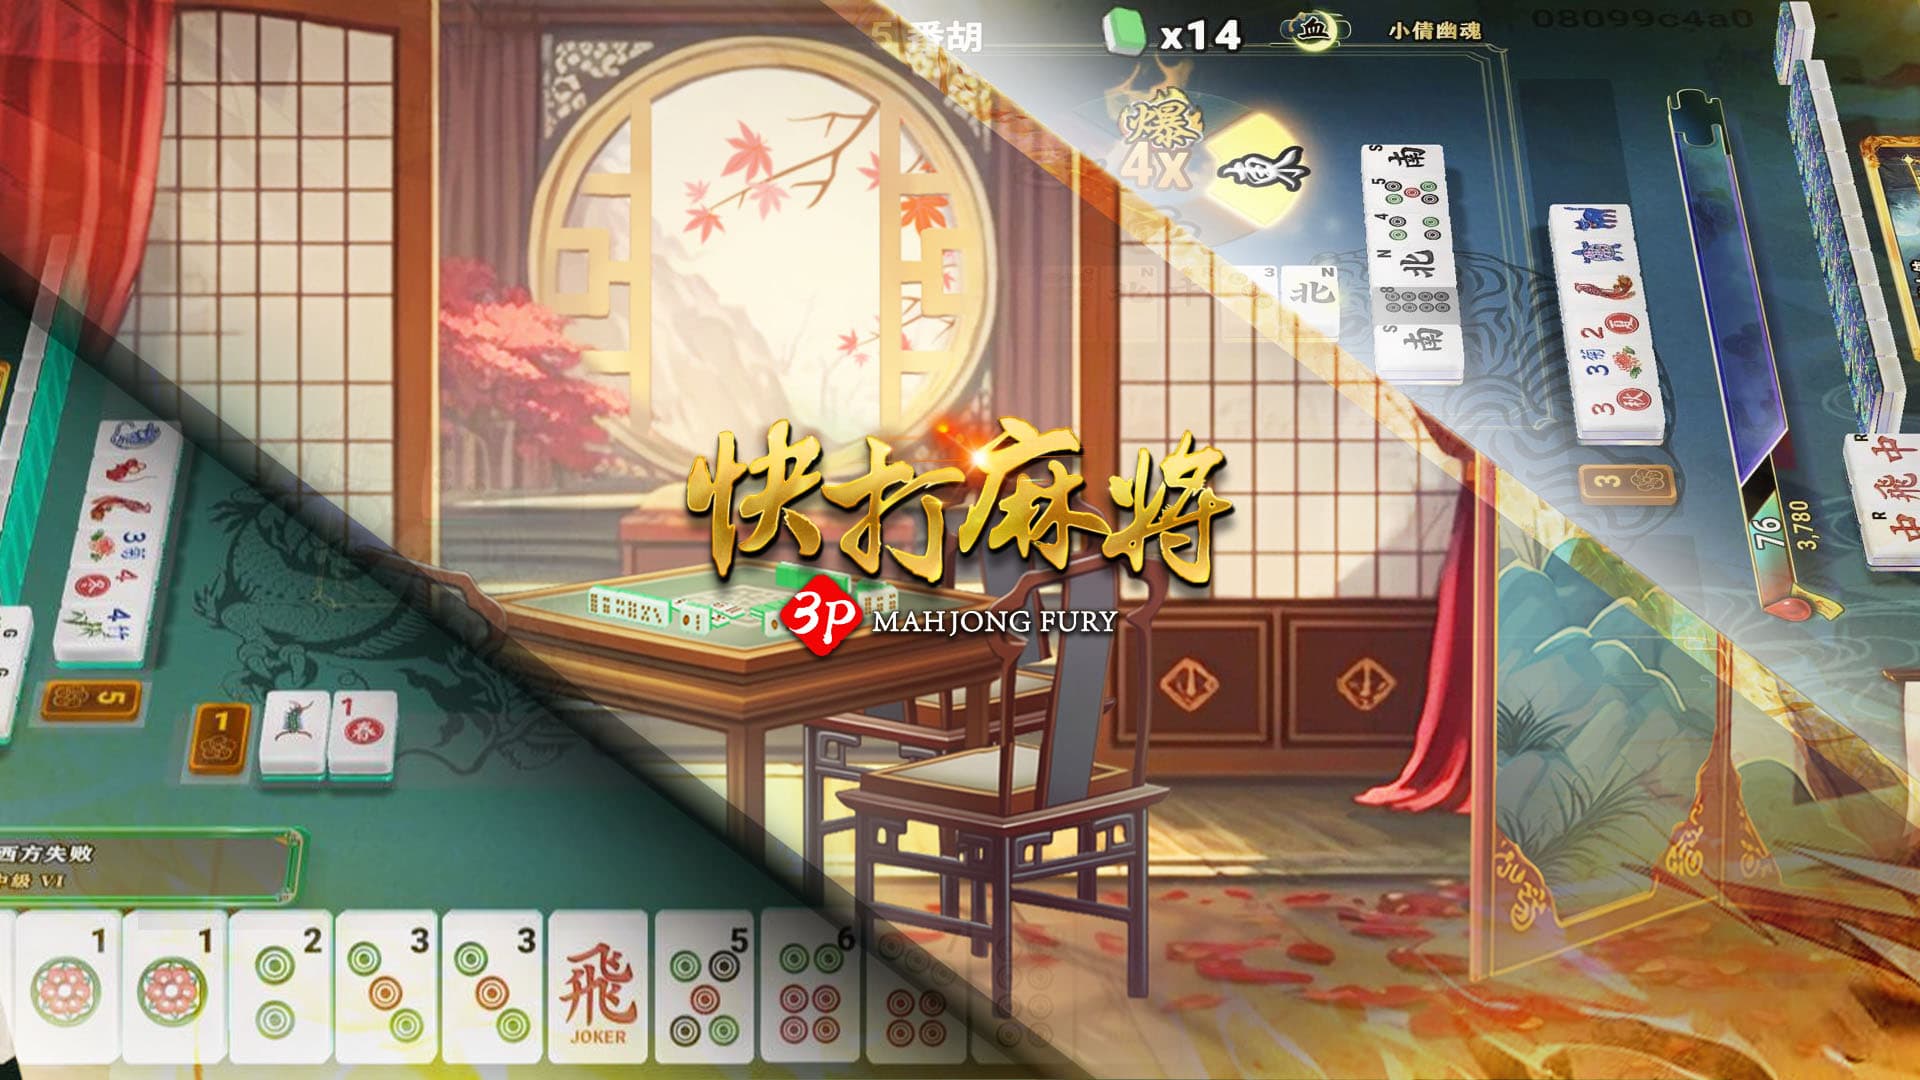 Mahjong Fury